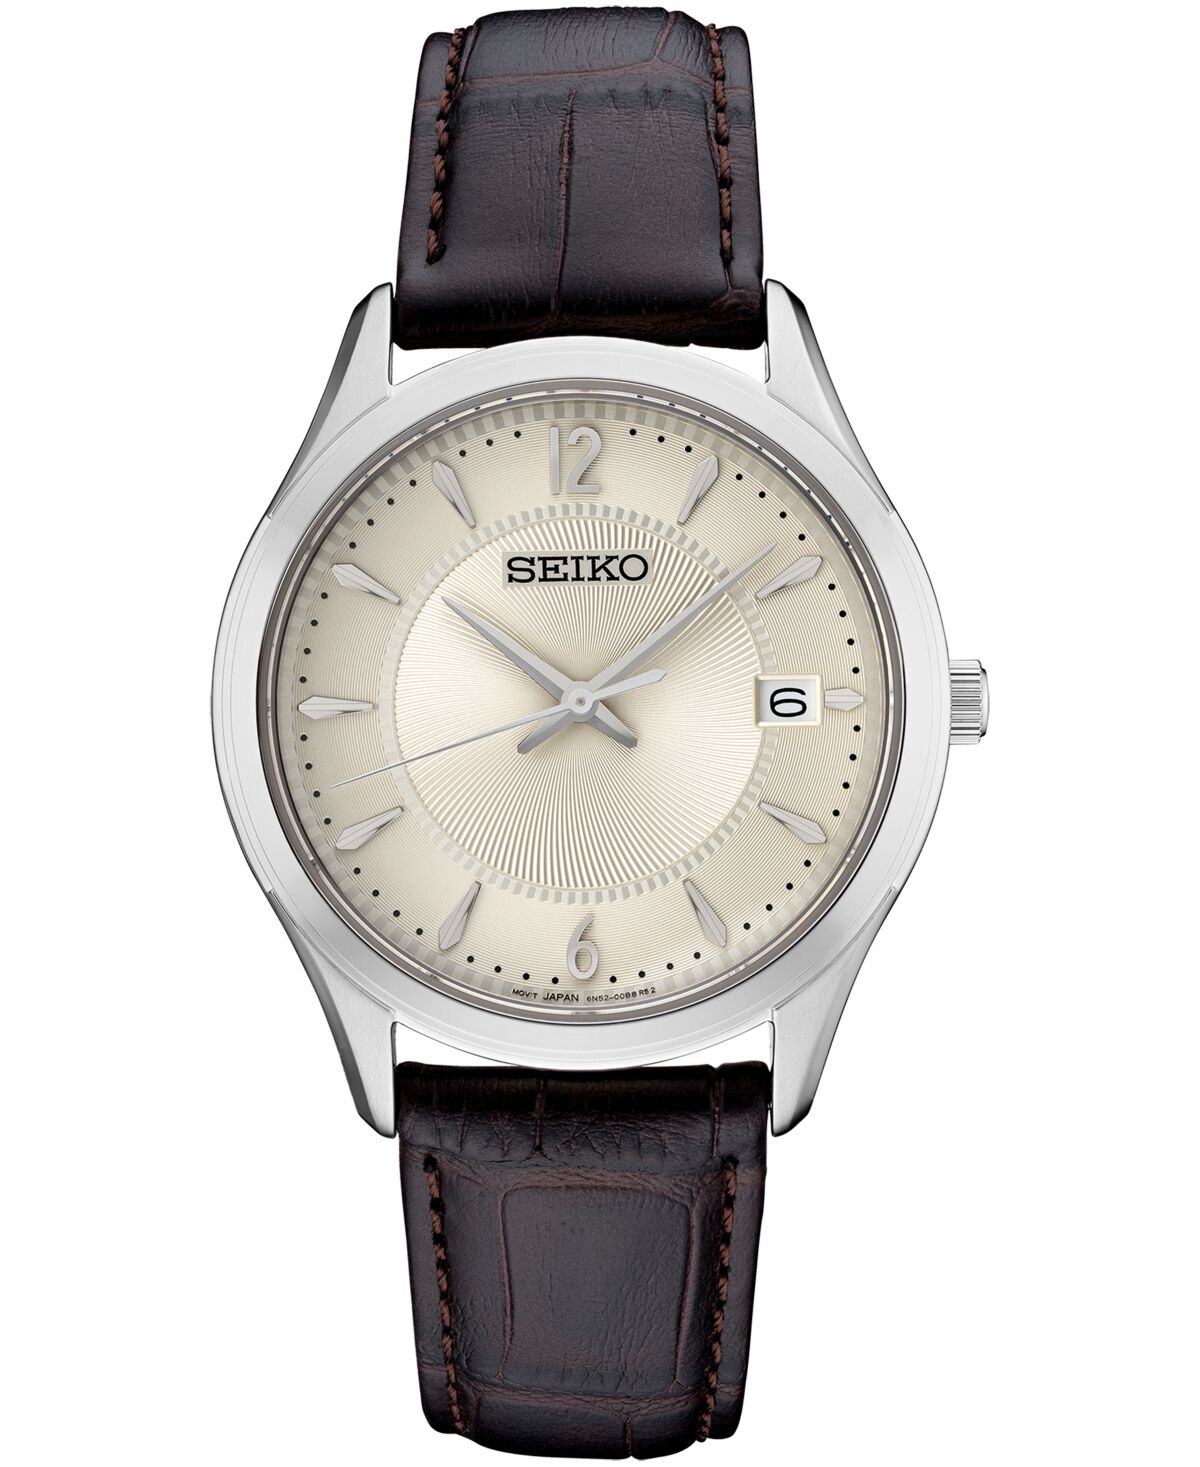 Seiko Women's Essential Brown Leather Strap Watch 30mm - Blush/cream